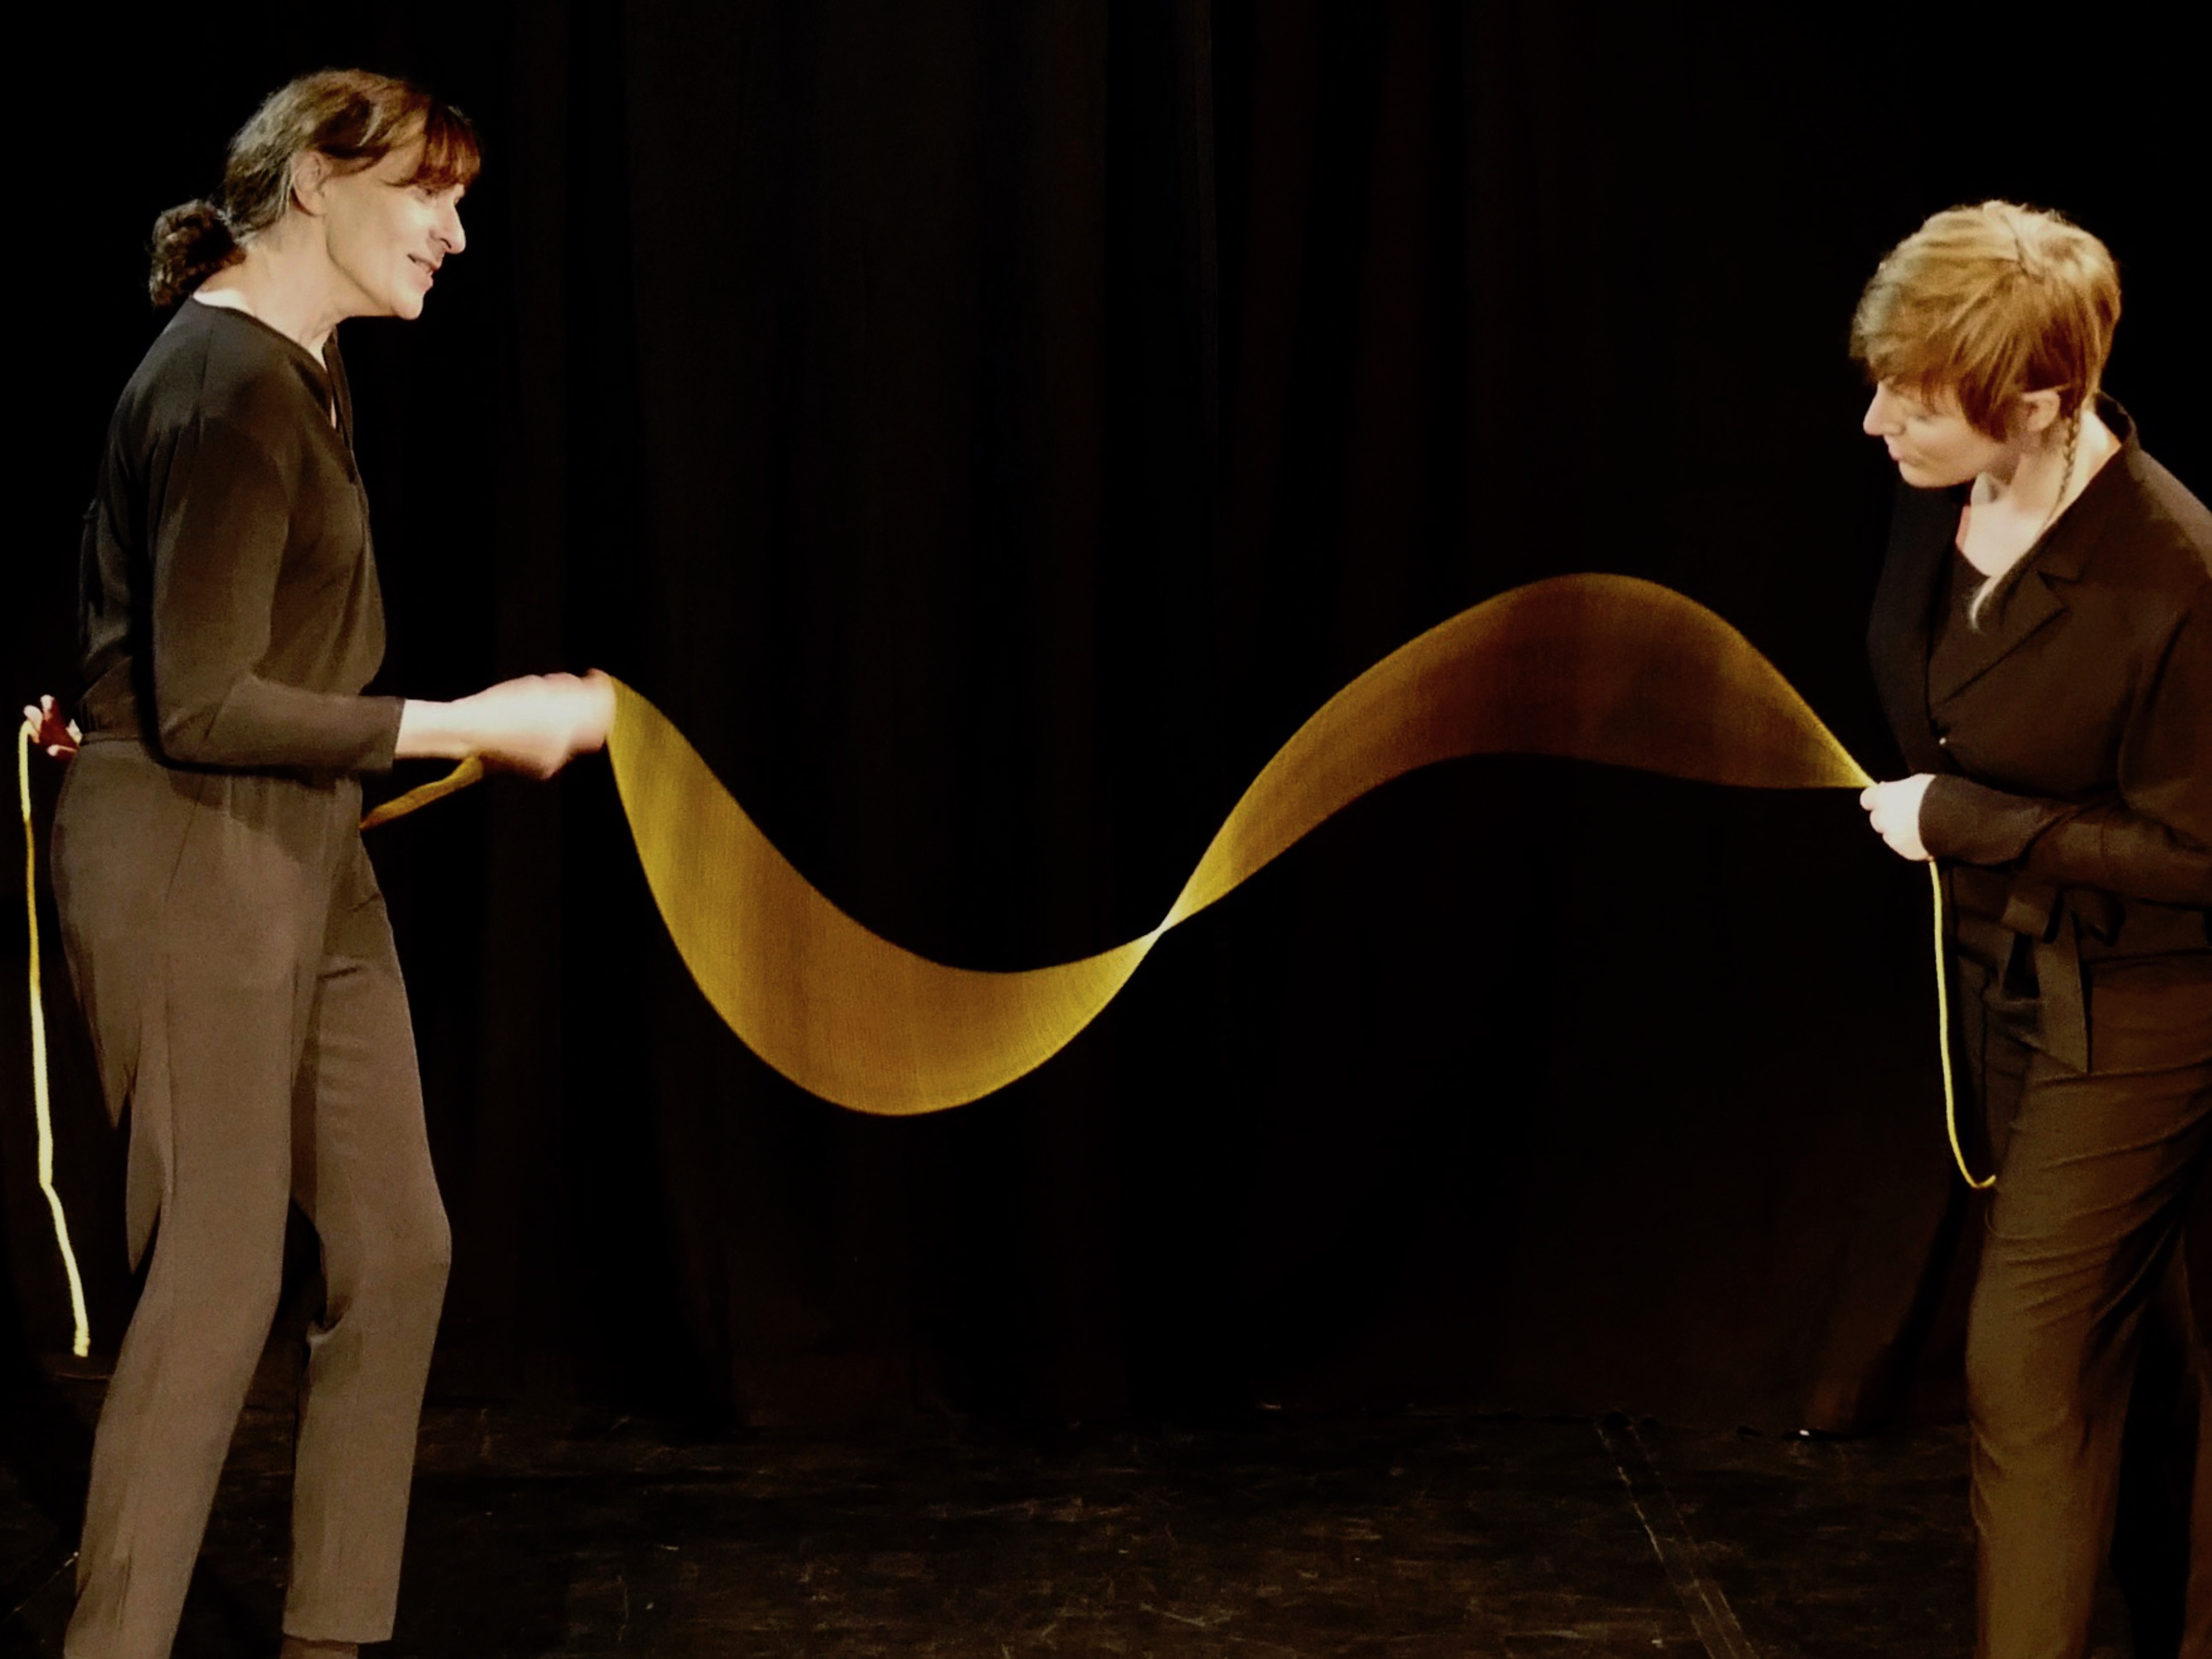 Zwei in Schwarz gekleidete Frauen stehen auf der Bühne und halten eine Art langes Band in der Hand, das zwischen ihnen wie eine Welle fließt.